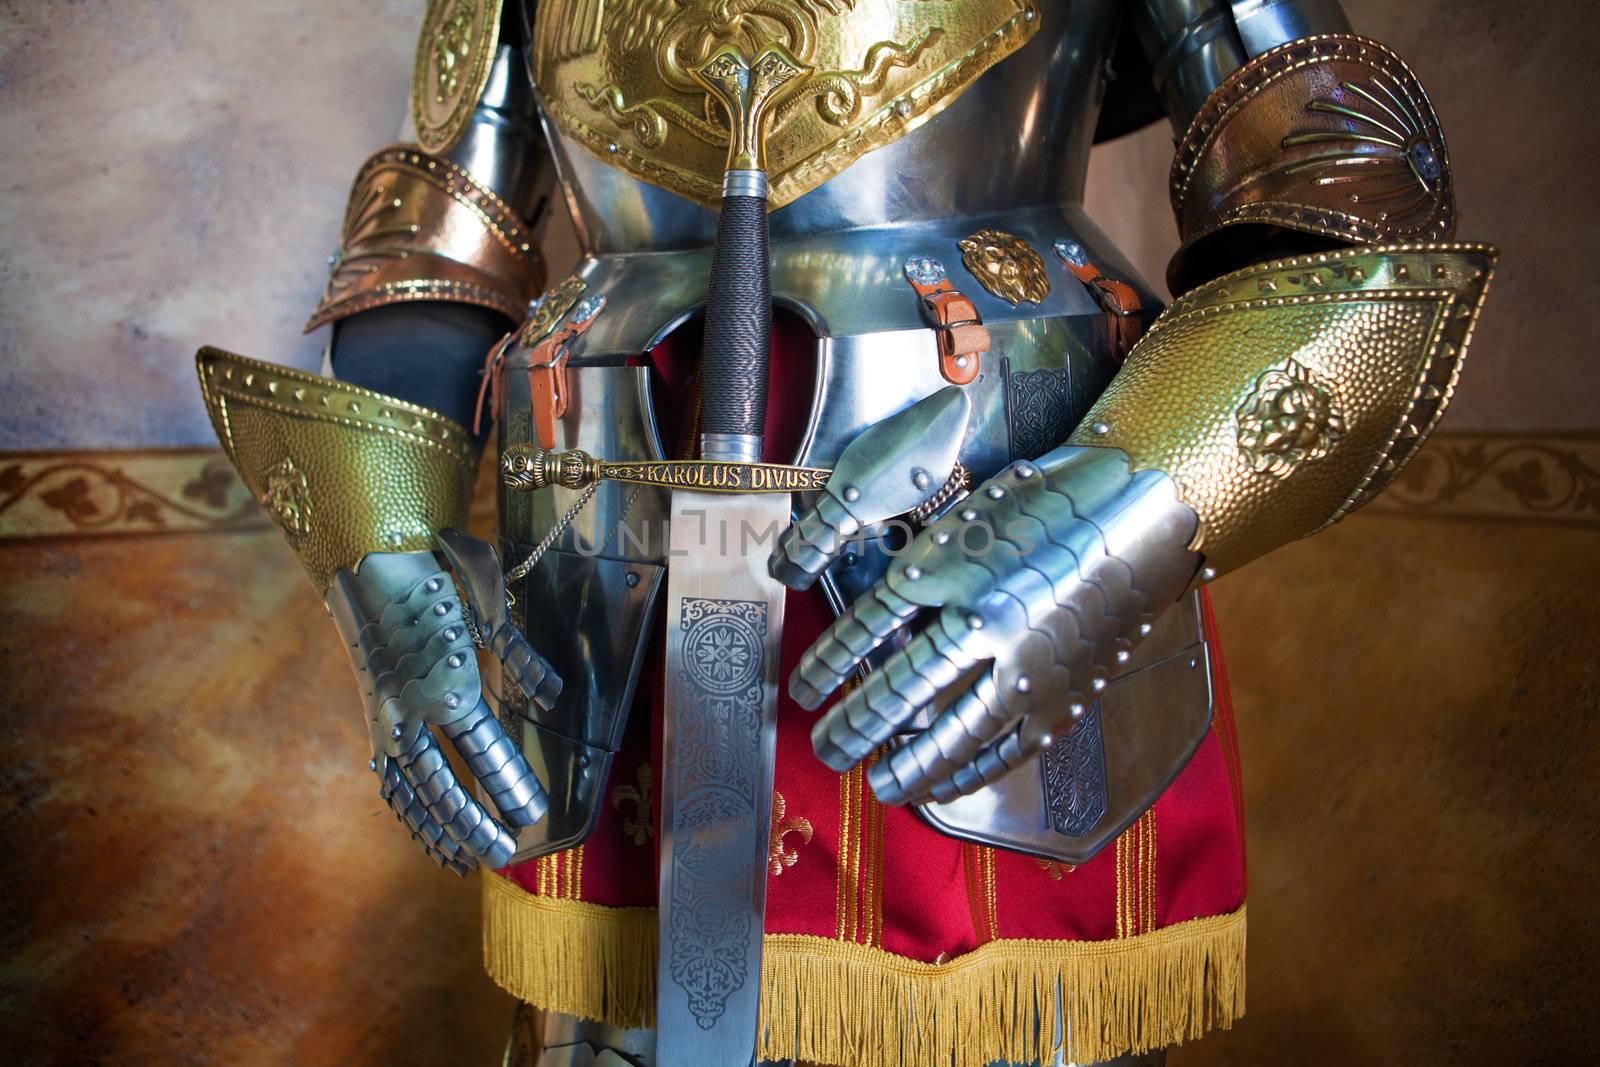 medieval armor by carloscastilla